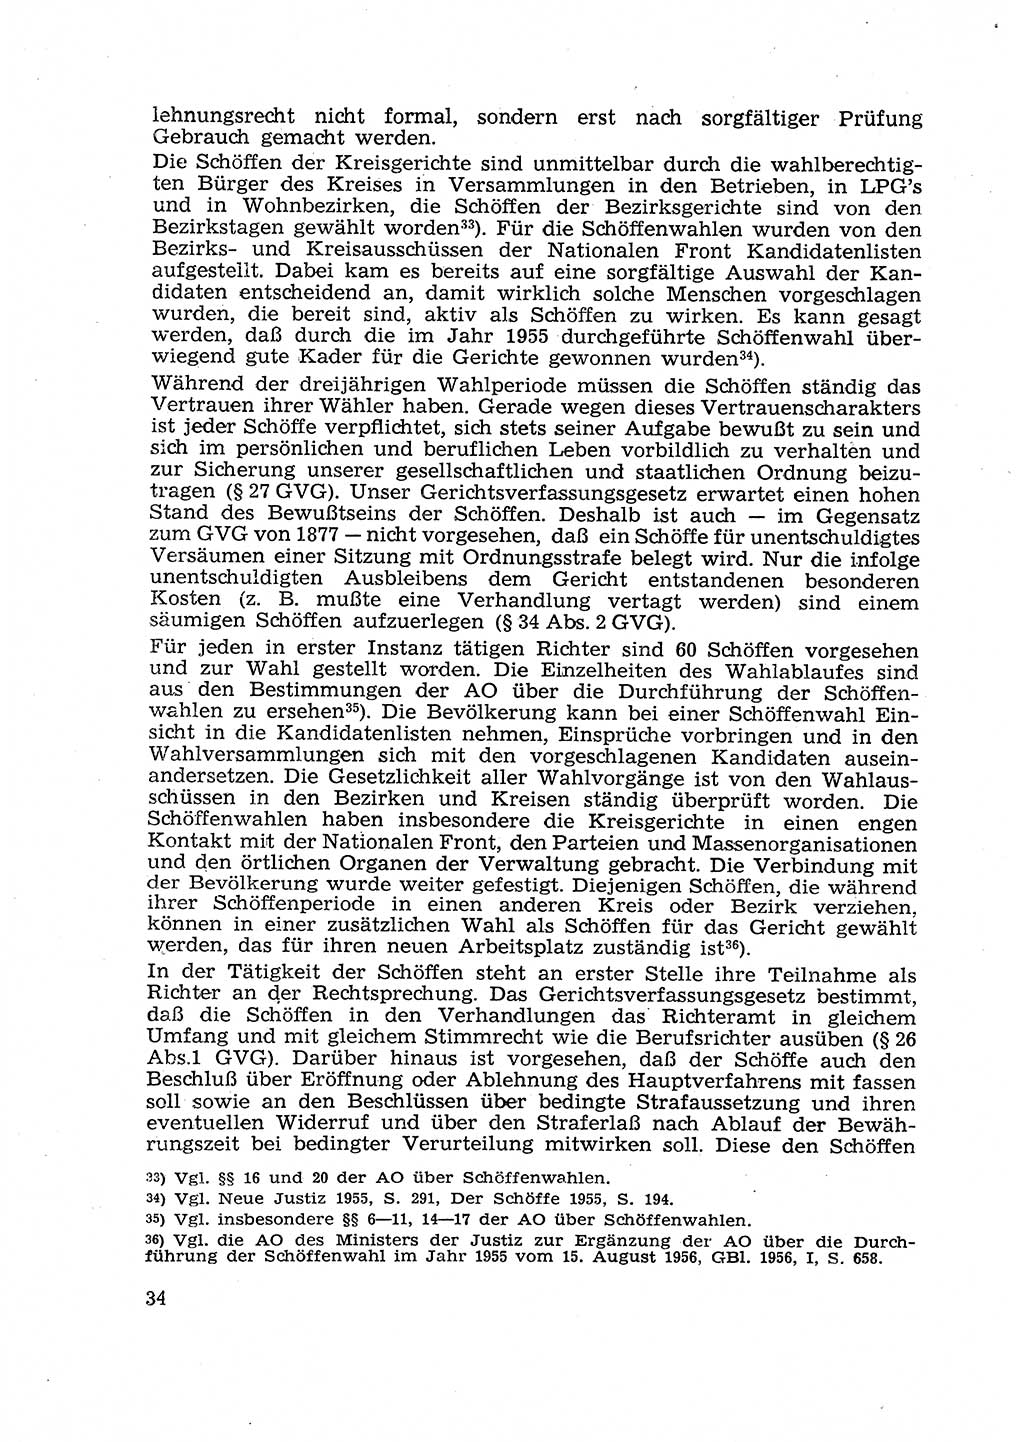 Gericht und Rechtsprechung in der Deutschen Demokratischen Republik (DDR) 1956, Seite 34 (Ger. Rechtspr. DDR 1956, S. 34)